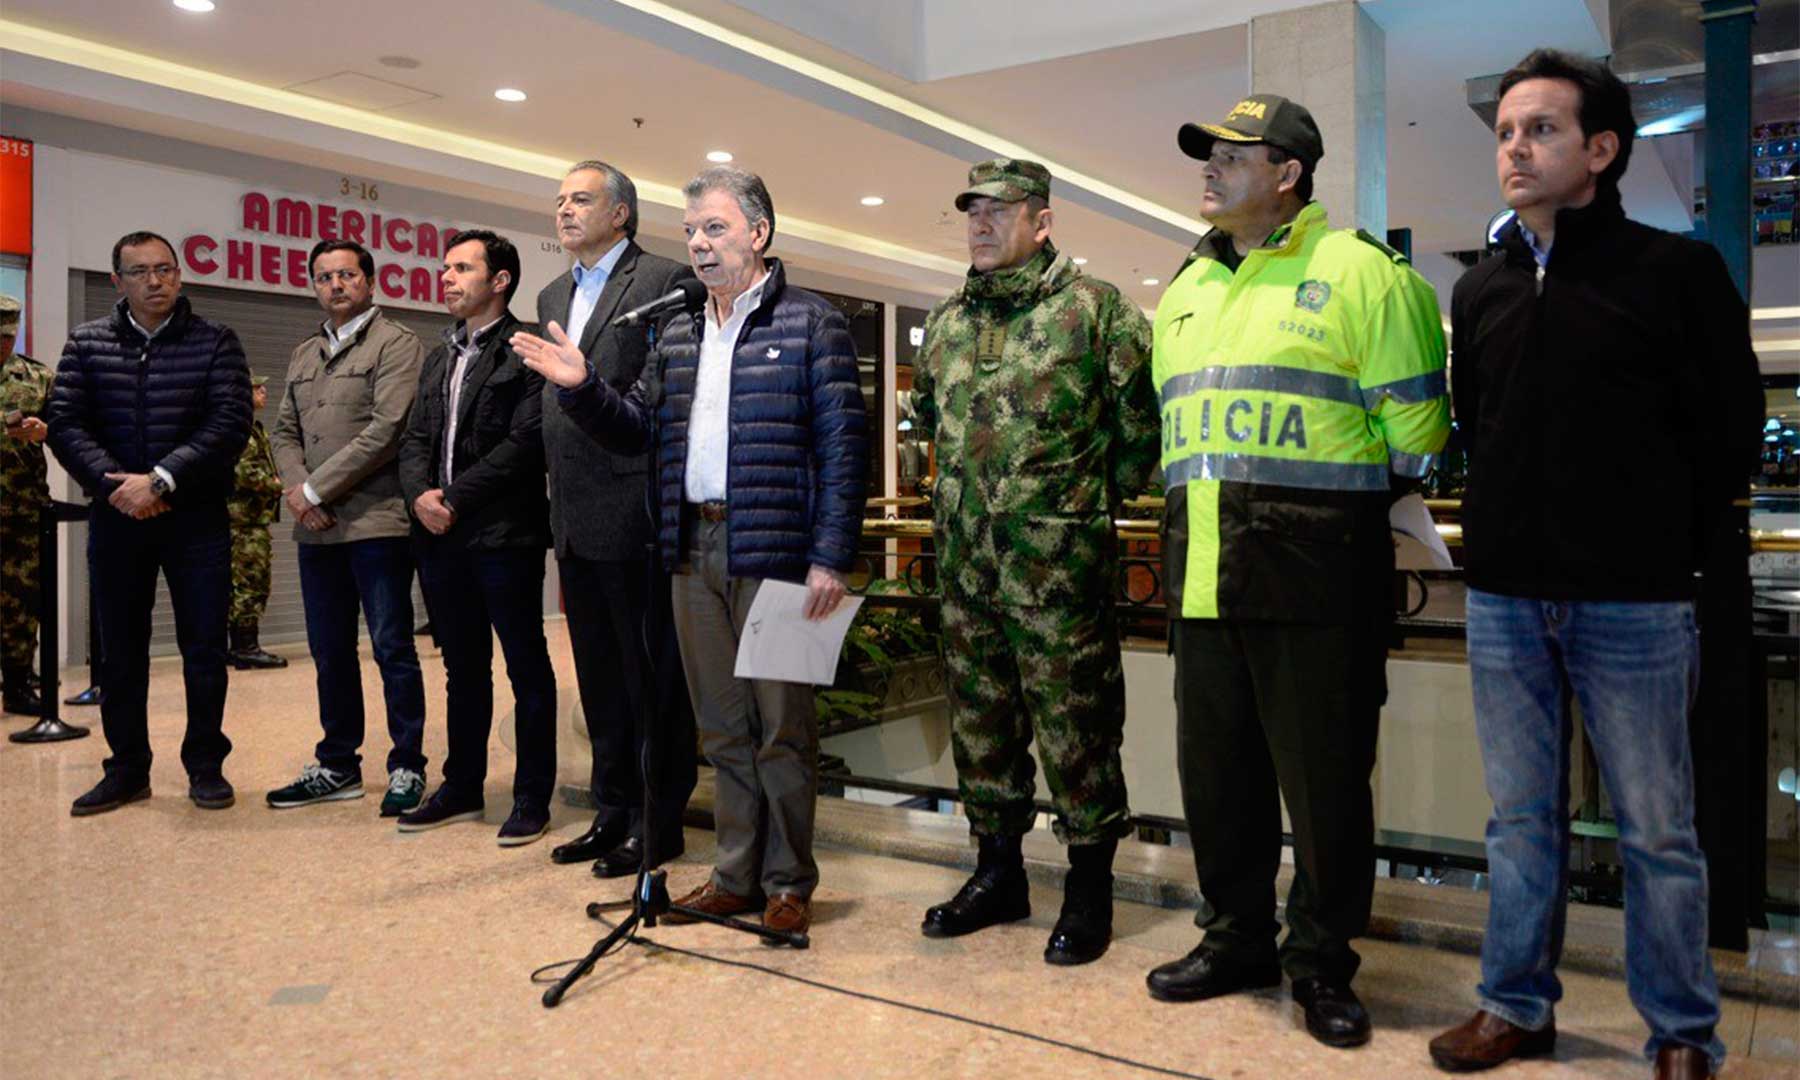 Les puedo asegurar que los responsables del ataque terrorista caerán: Presidente Santos